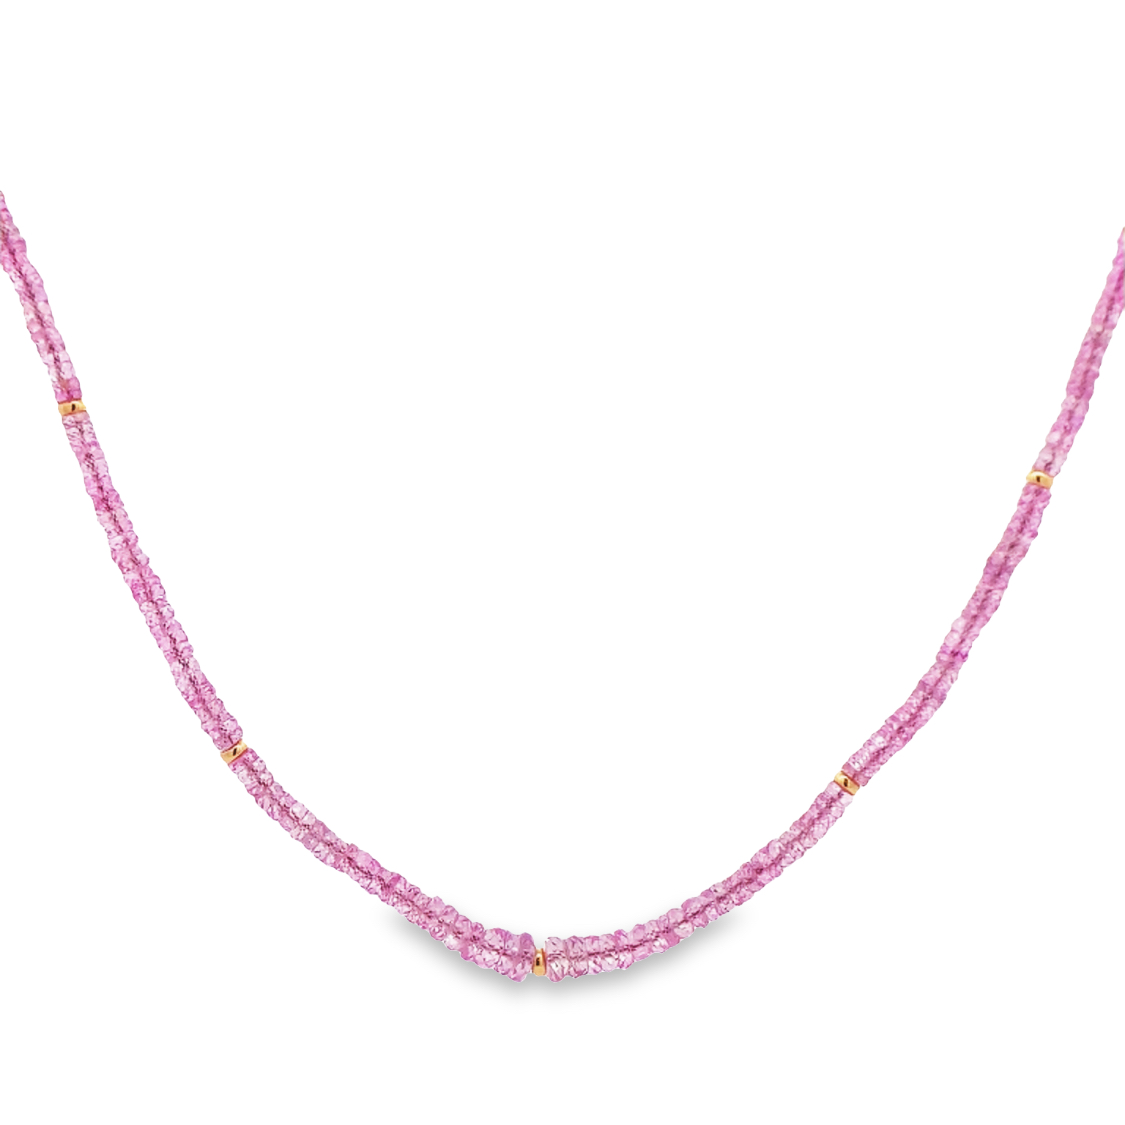 Lauren K 18K Yellow Gold Pink Sapphire Beaded Necklace